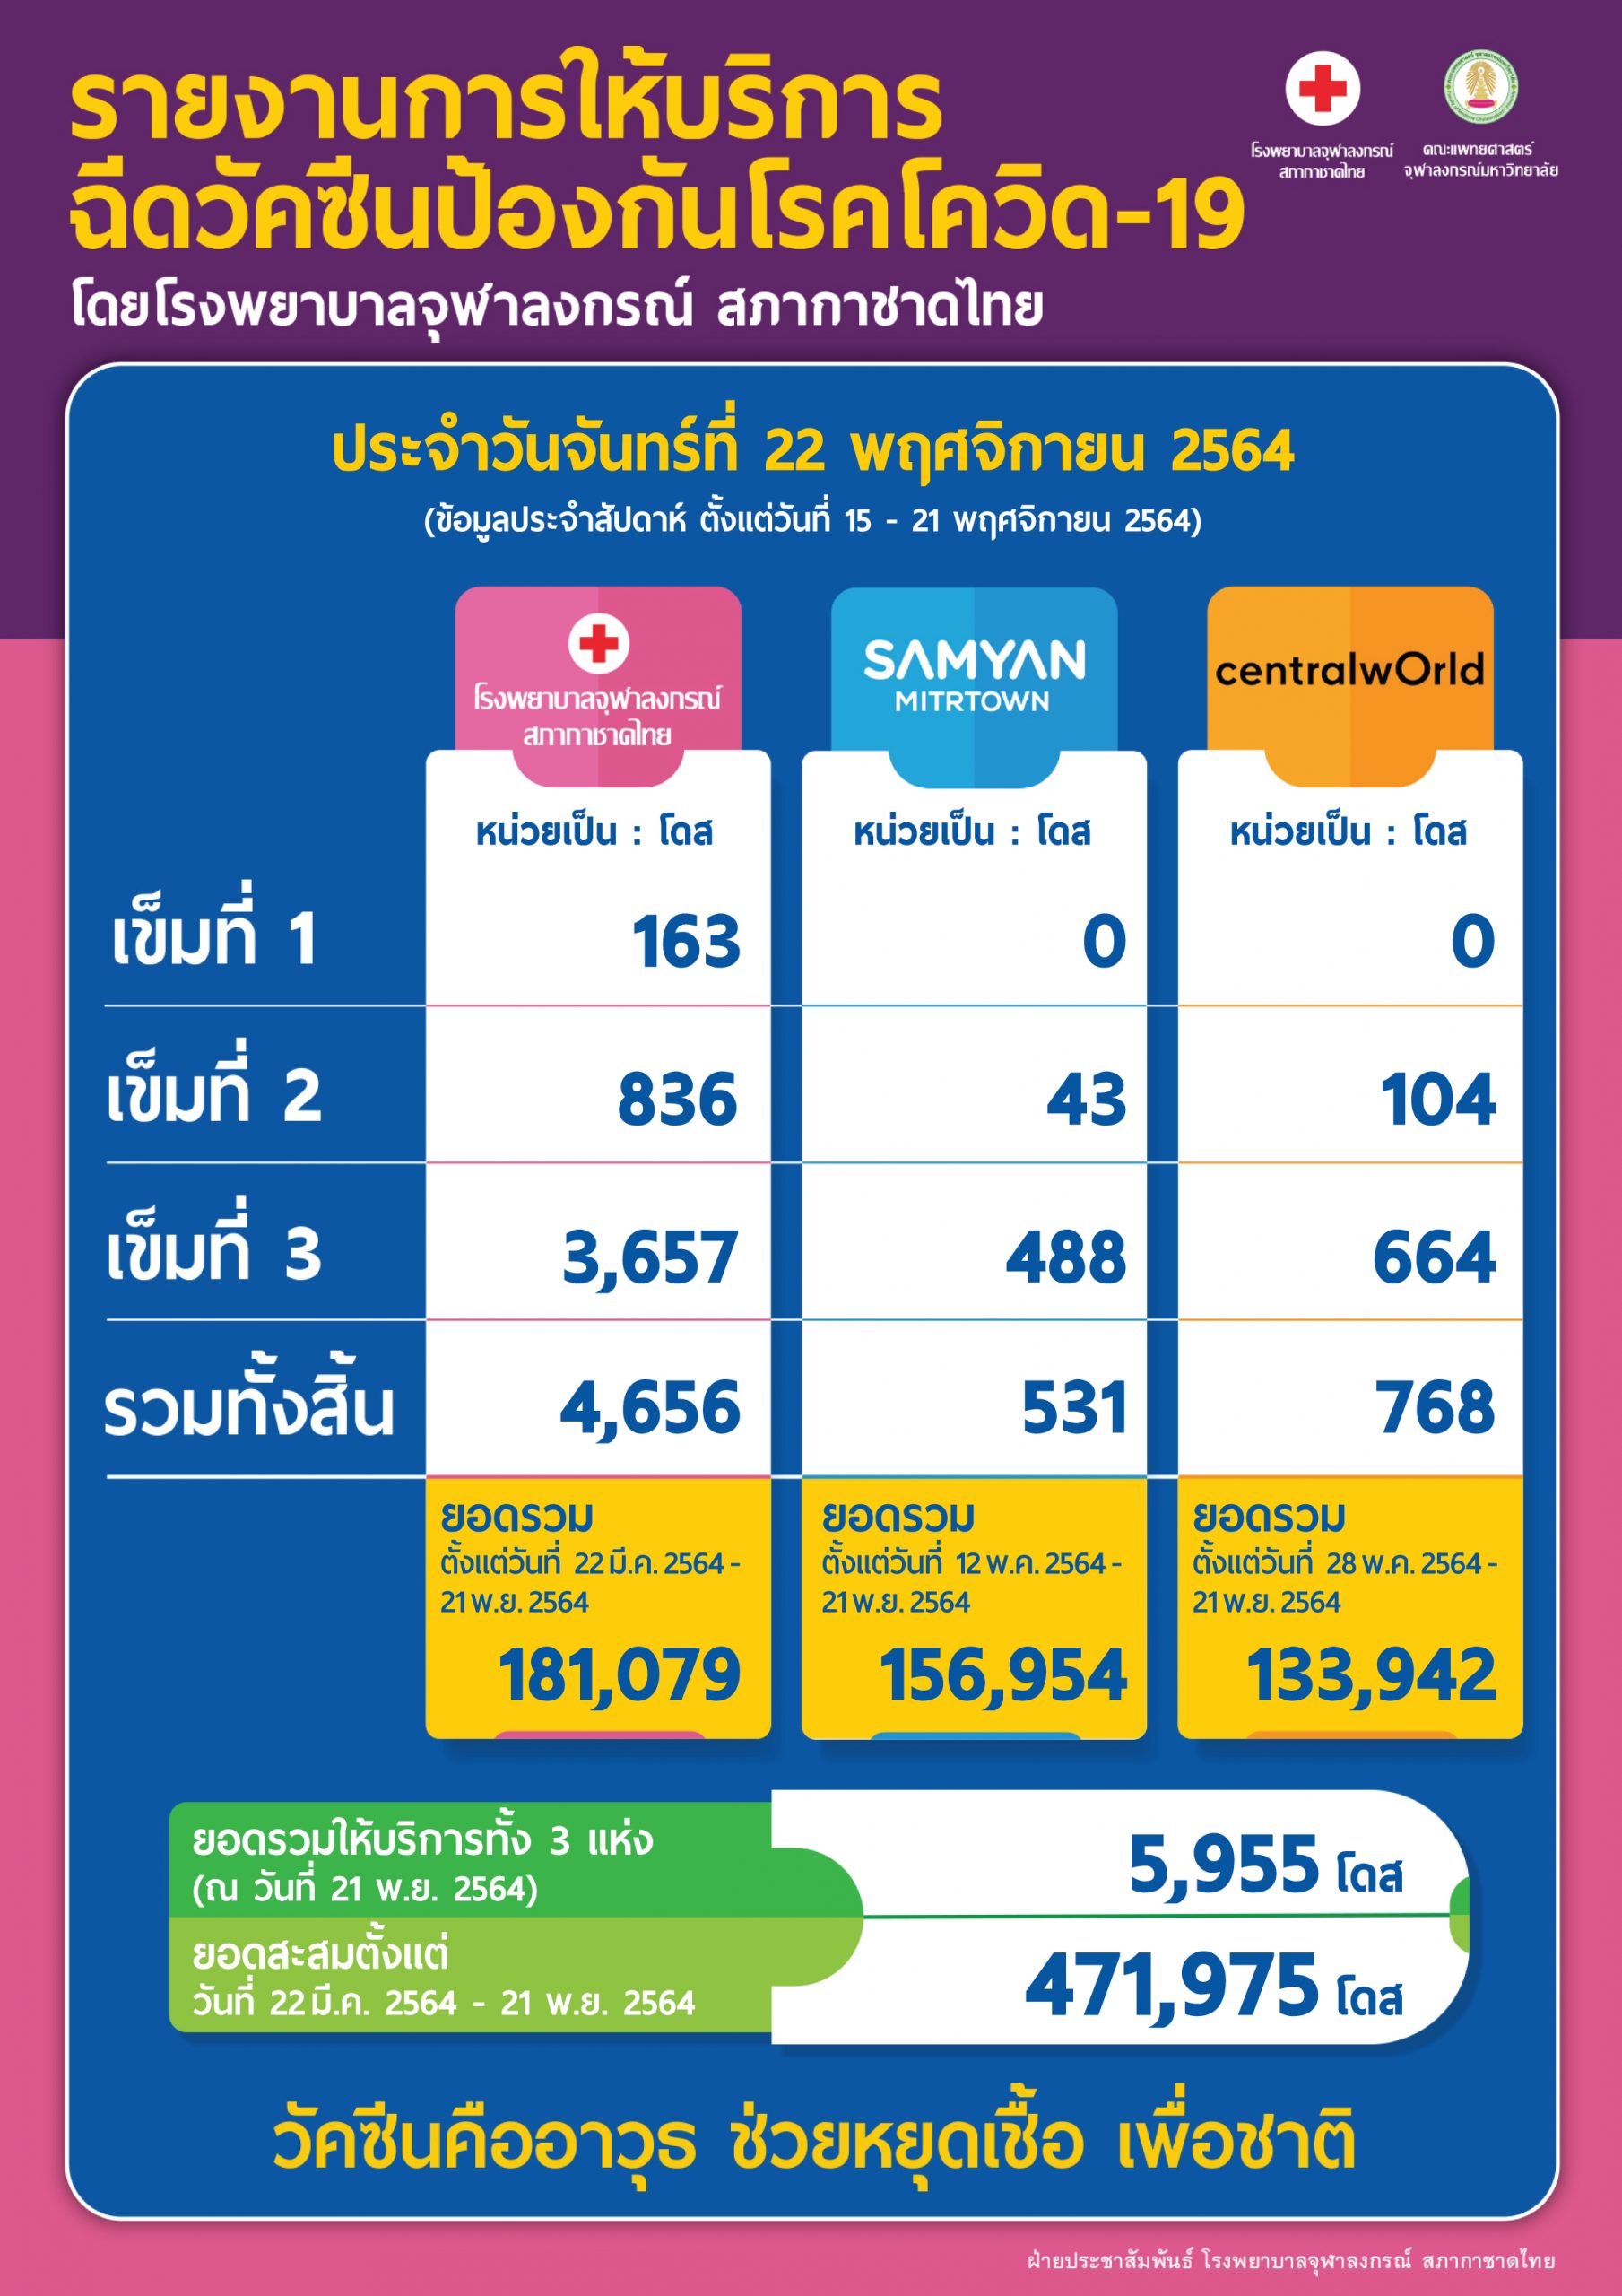 รายงานการให้บริการฉีดวัคซีนป้องกันโรคโควิด-19 โดยโรงพยาบาลจุฬาลงกรณ์ สภากาชาดไทย ประจำวันจันทร์ที่ 22 พฤศจิกายน 2564